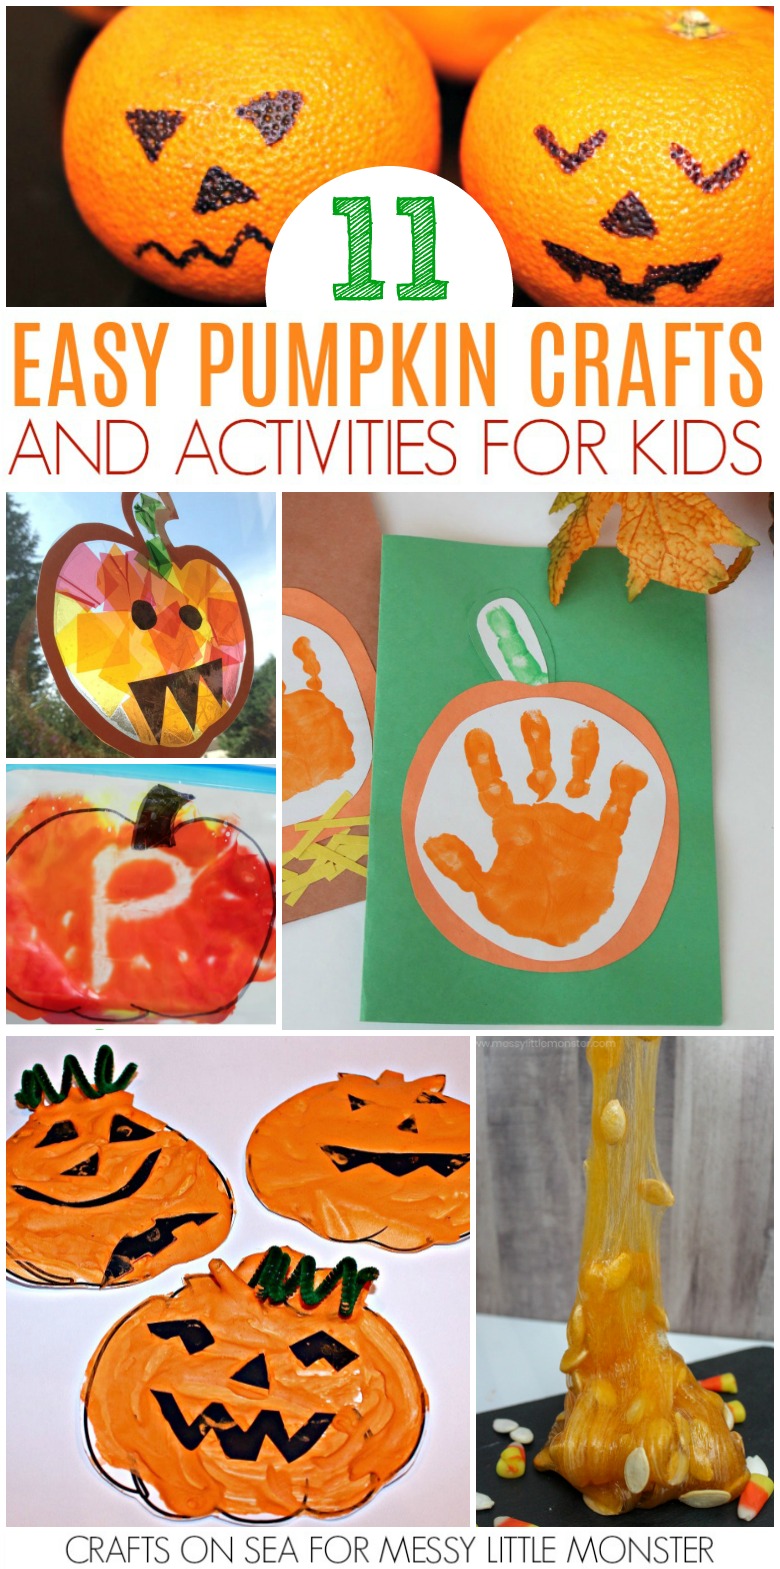 Pumpkin crafts for kids and a few pumpkin activities too! Lots of pumpkin activities for preschoolers to enjoy this Autumn